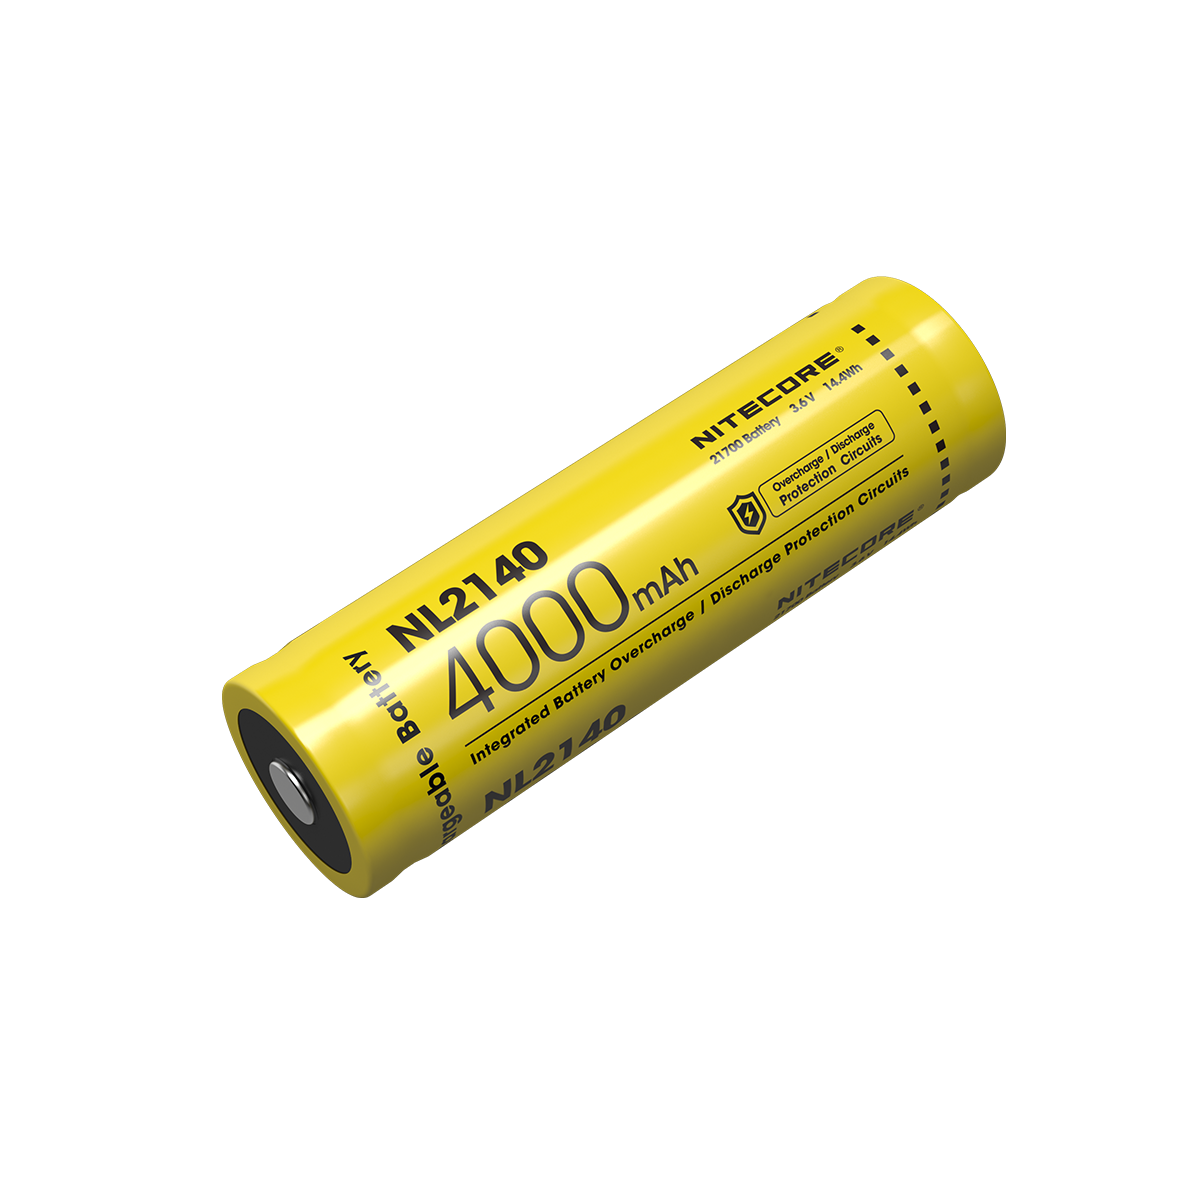 奈特科尔电池 NL2140 4000mAh 可充电 21700 电池 使用